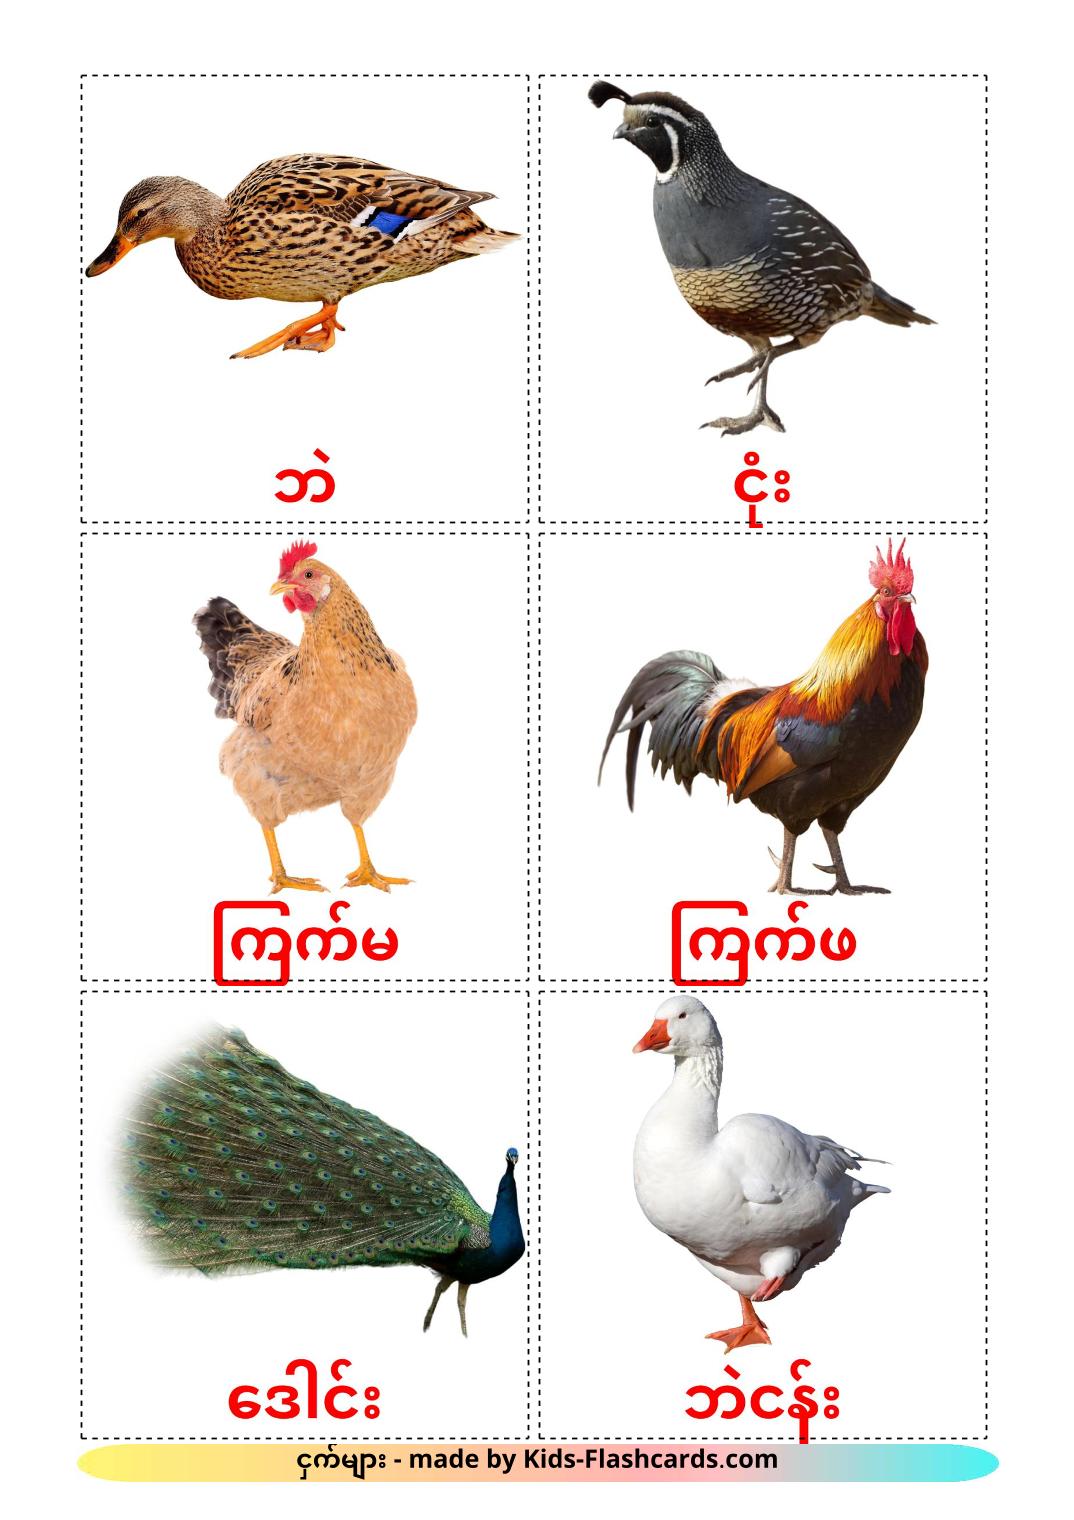 Птицы в деревне - 11 Карточек Домана на бирманском